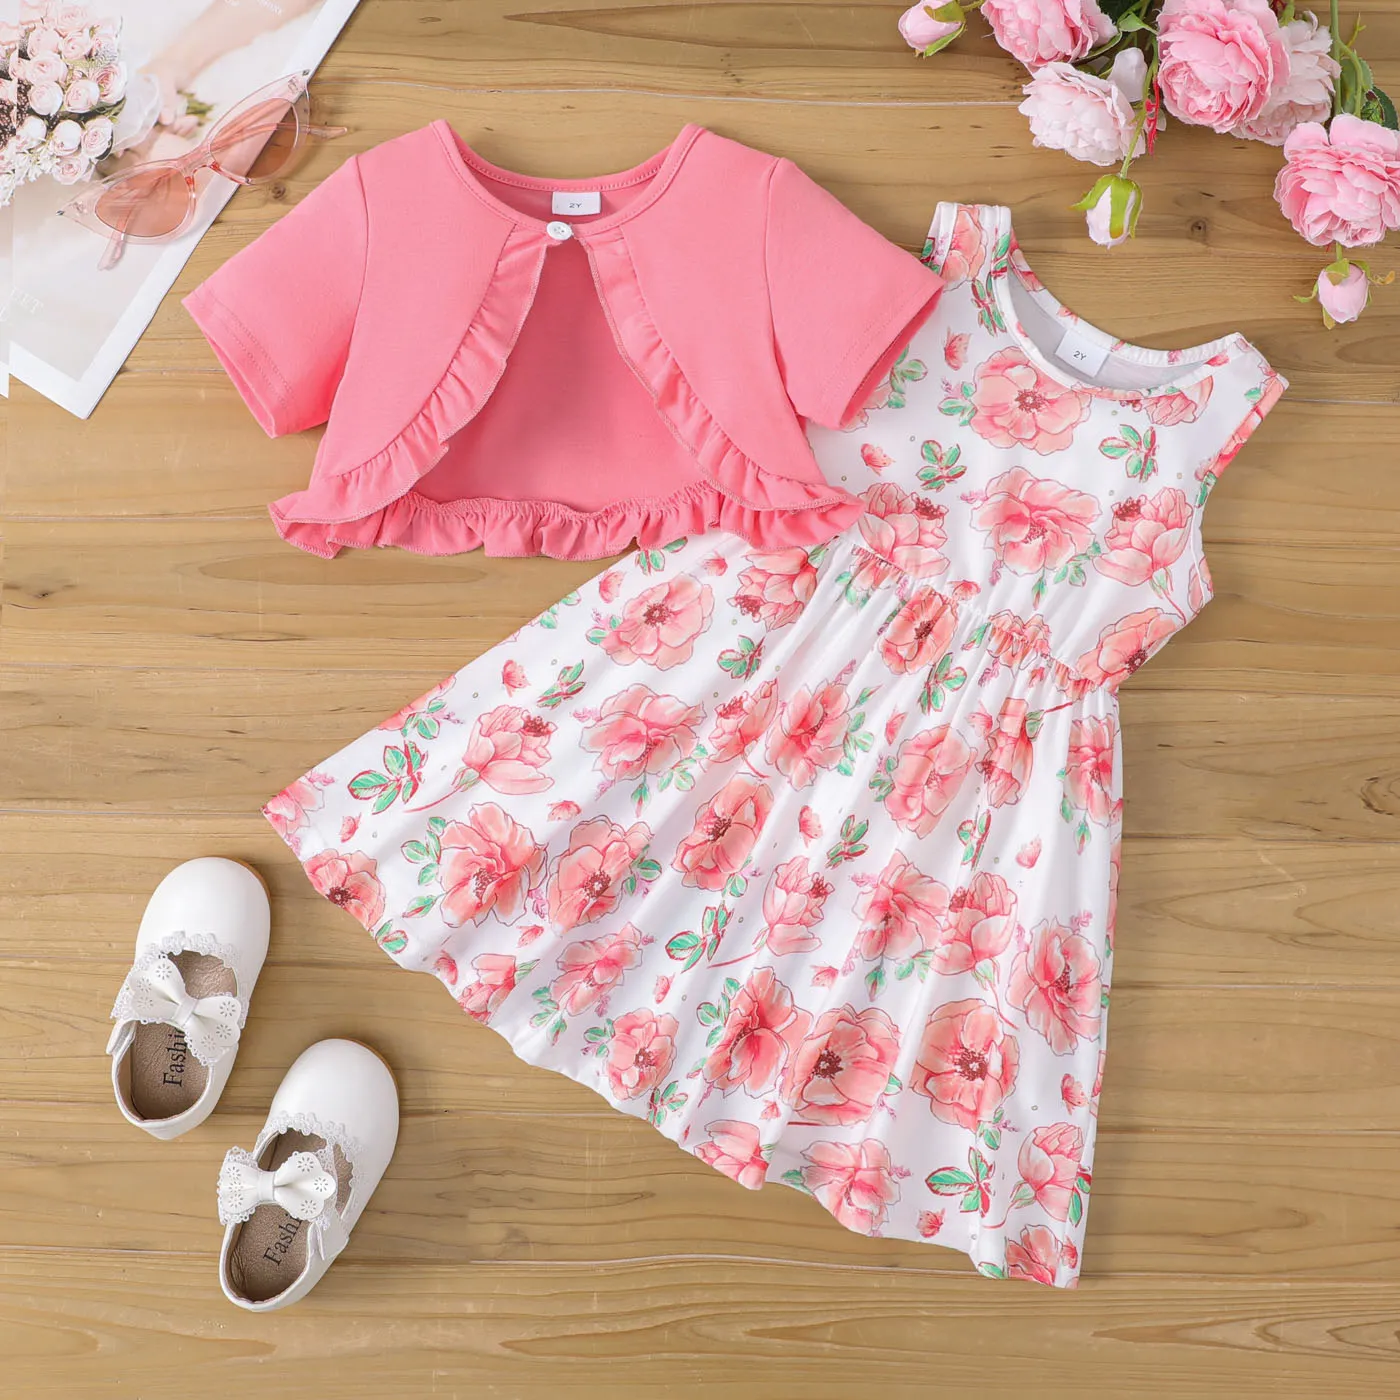 2pcs Toddler Girl Ruffled Cardigan and Floral Print Tank Dress Set